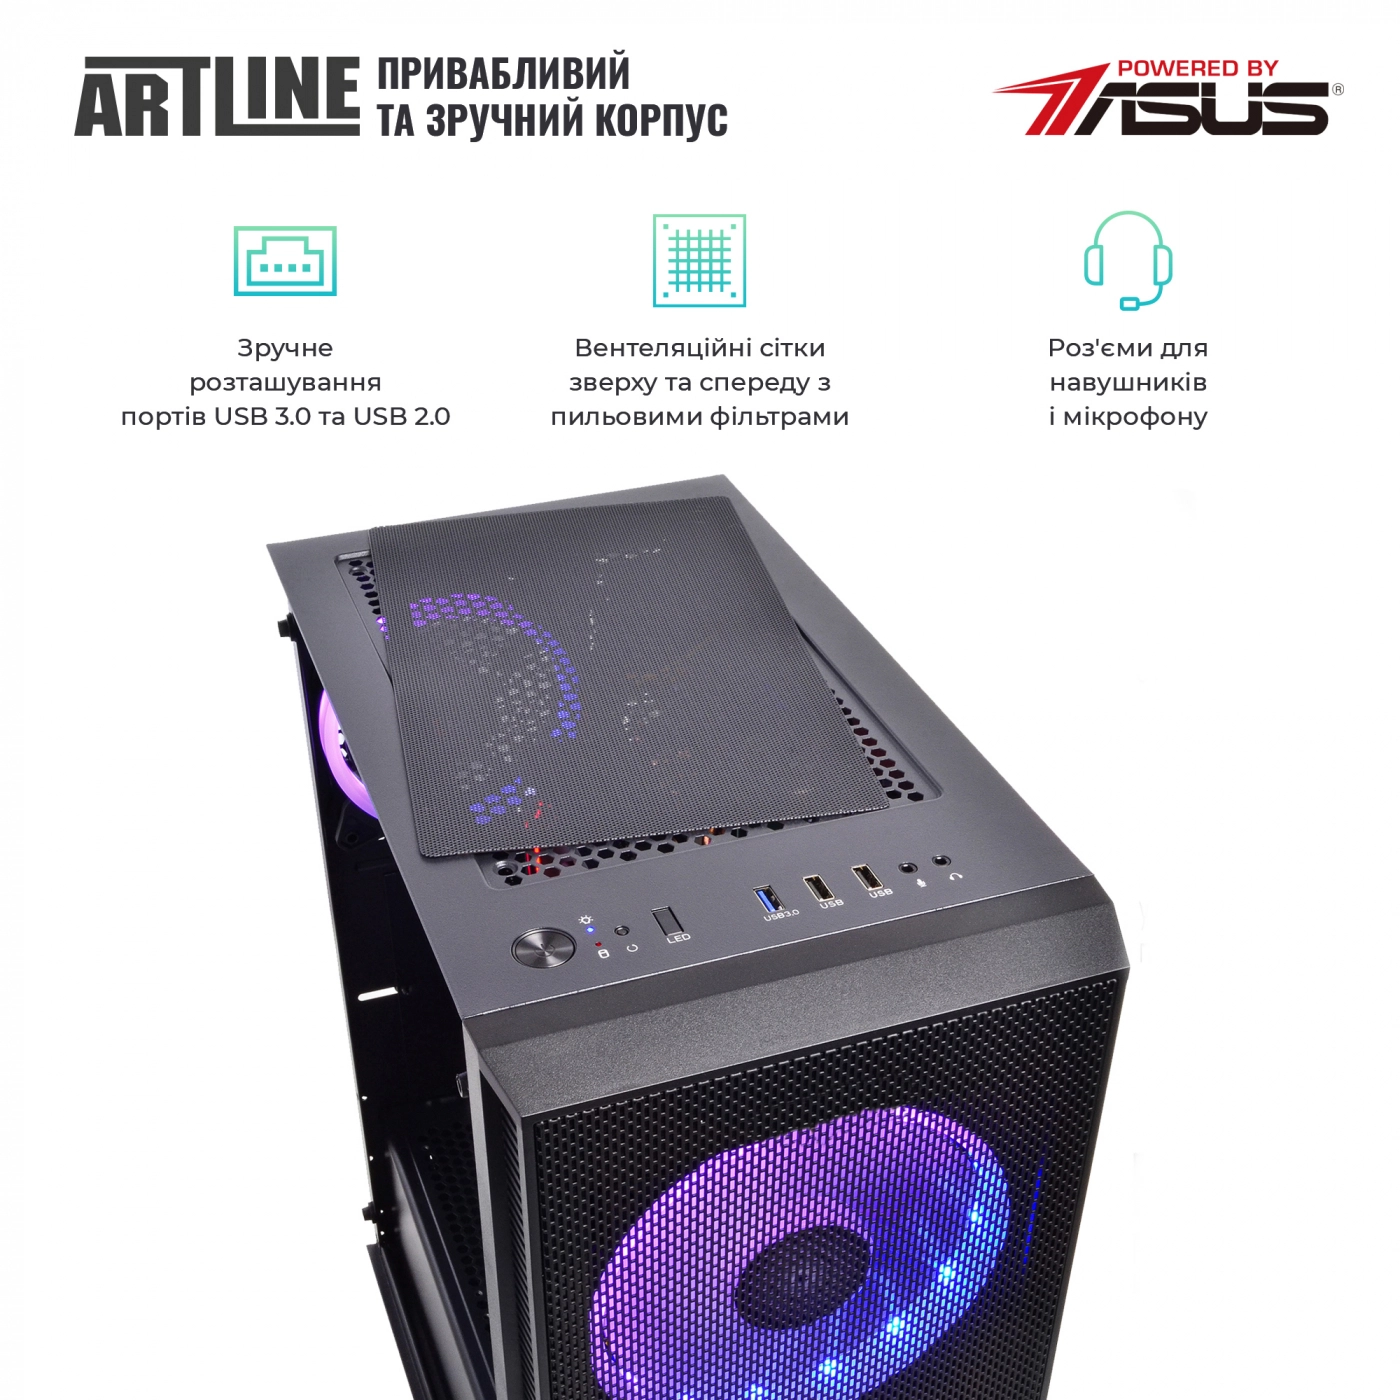 Купить Компьютер ARTLINE Gaming X55v29 - фото 4